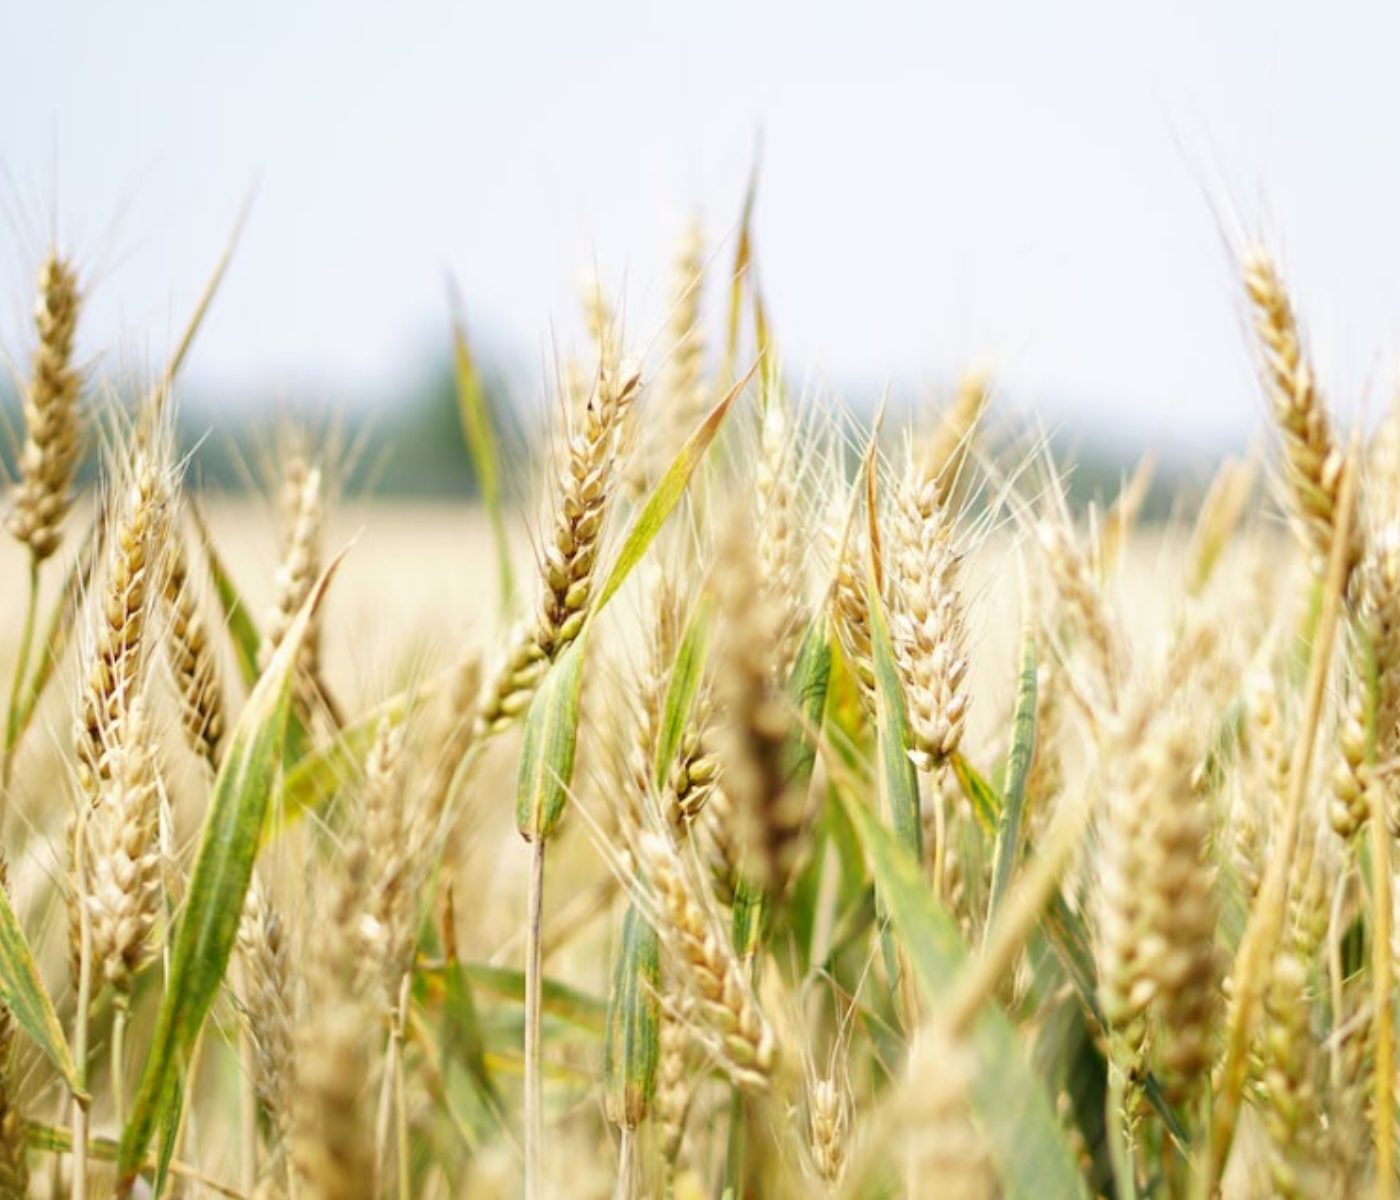 En 15 días, el precio internacional de la soja cayó 5% y el del trigo 12%